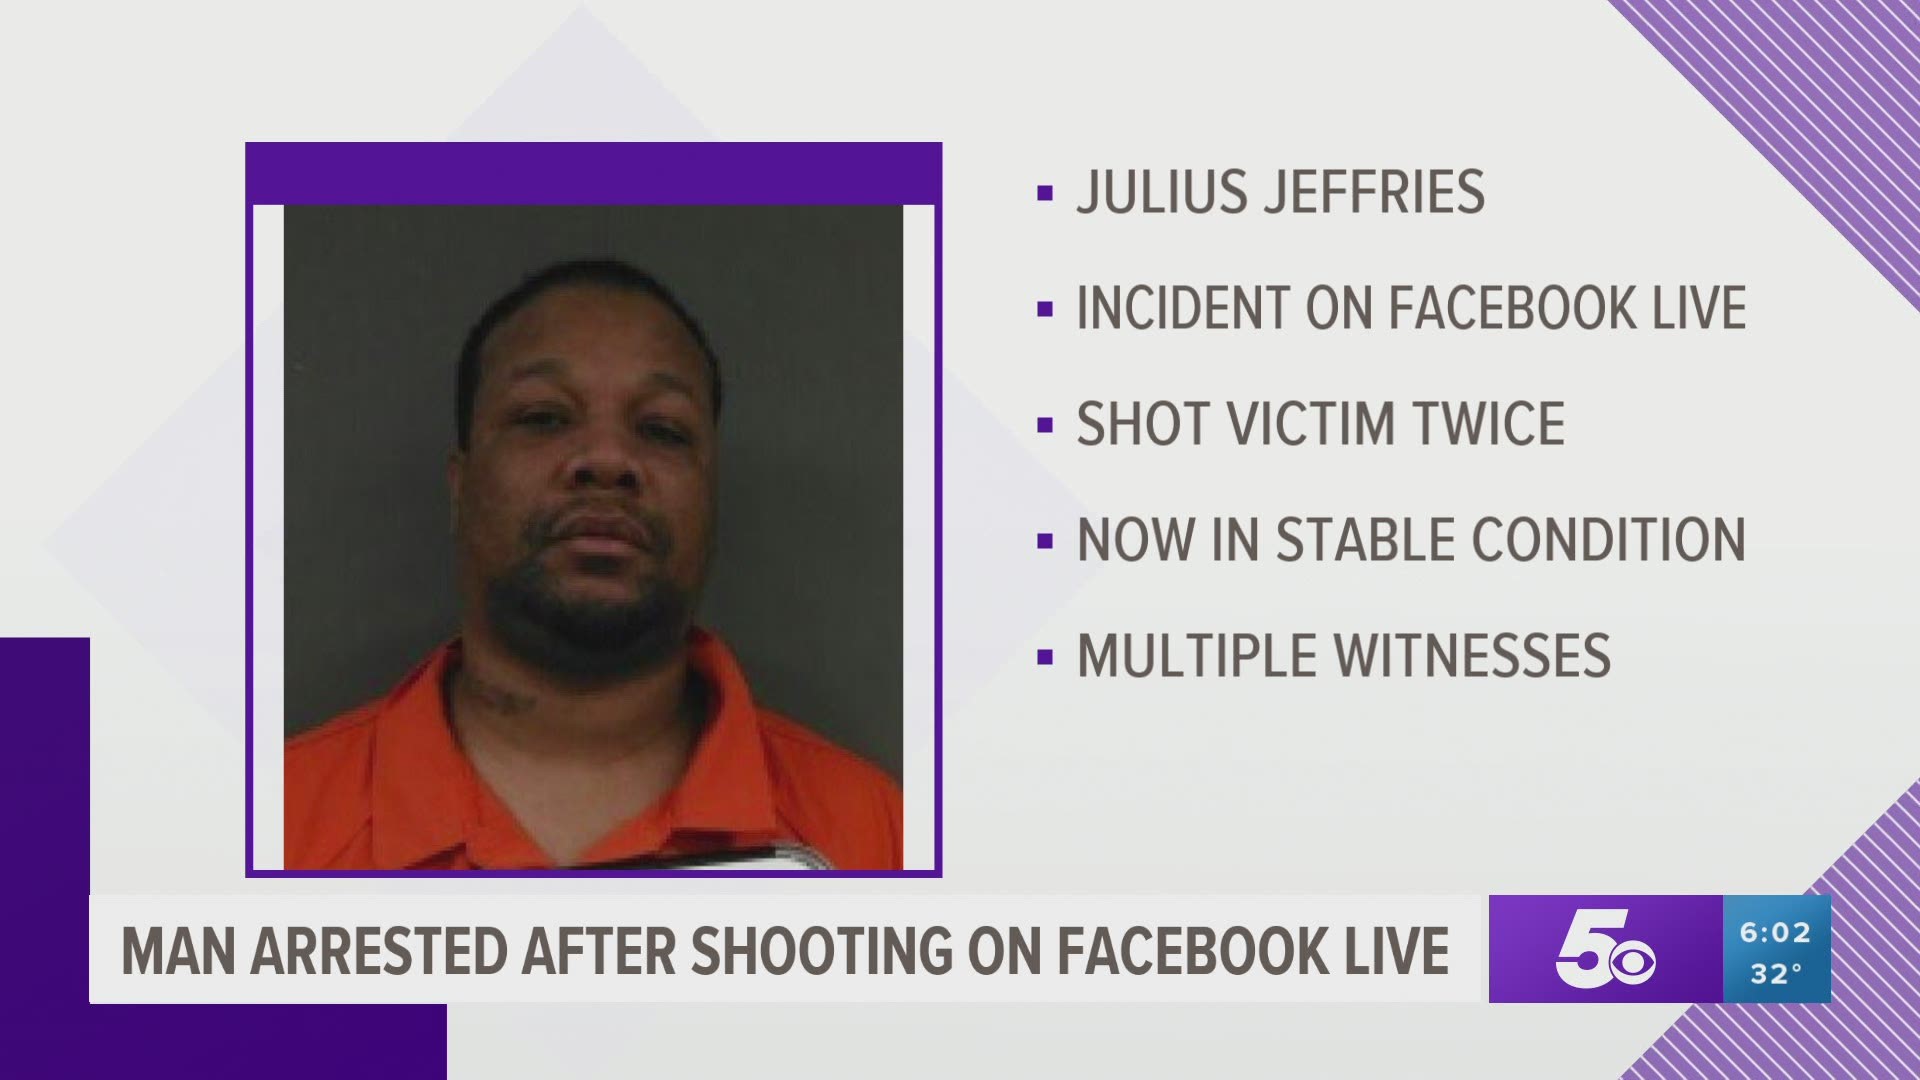 Man arrested after shooting on Facebook live